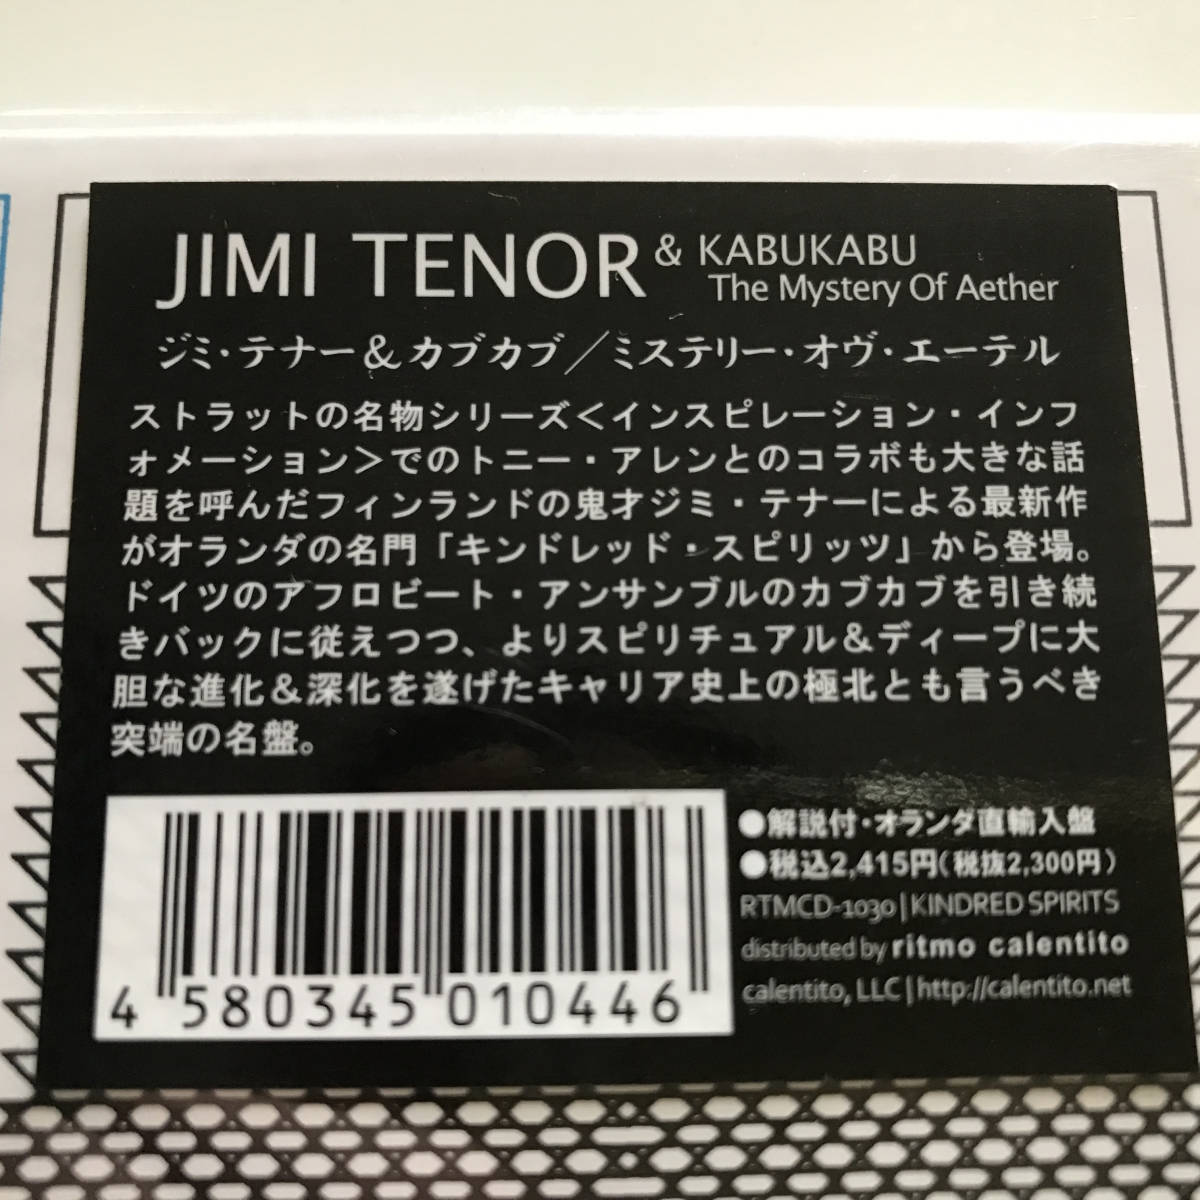 中古CD Jimi Tenor ジミ・テナー Kabu Kabu カブカブ The Mystery Of Aether ミステリー・オブ・エーテル RTMCD-1030 アフロ テクノジャズ_画像10